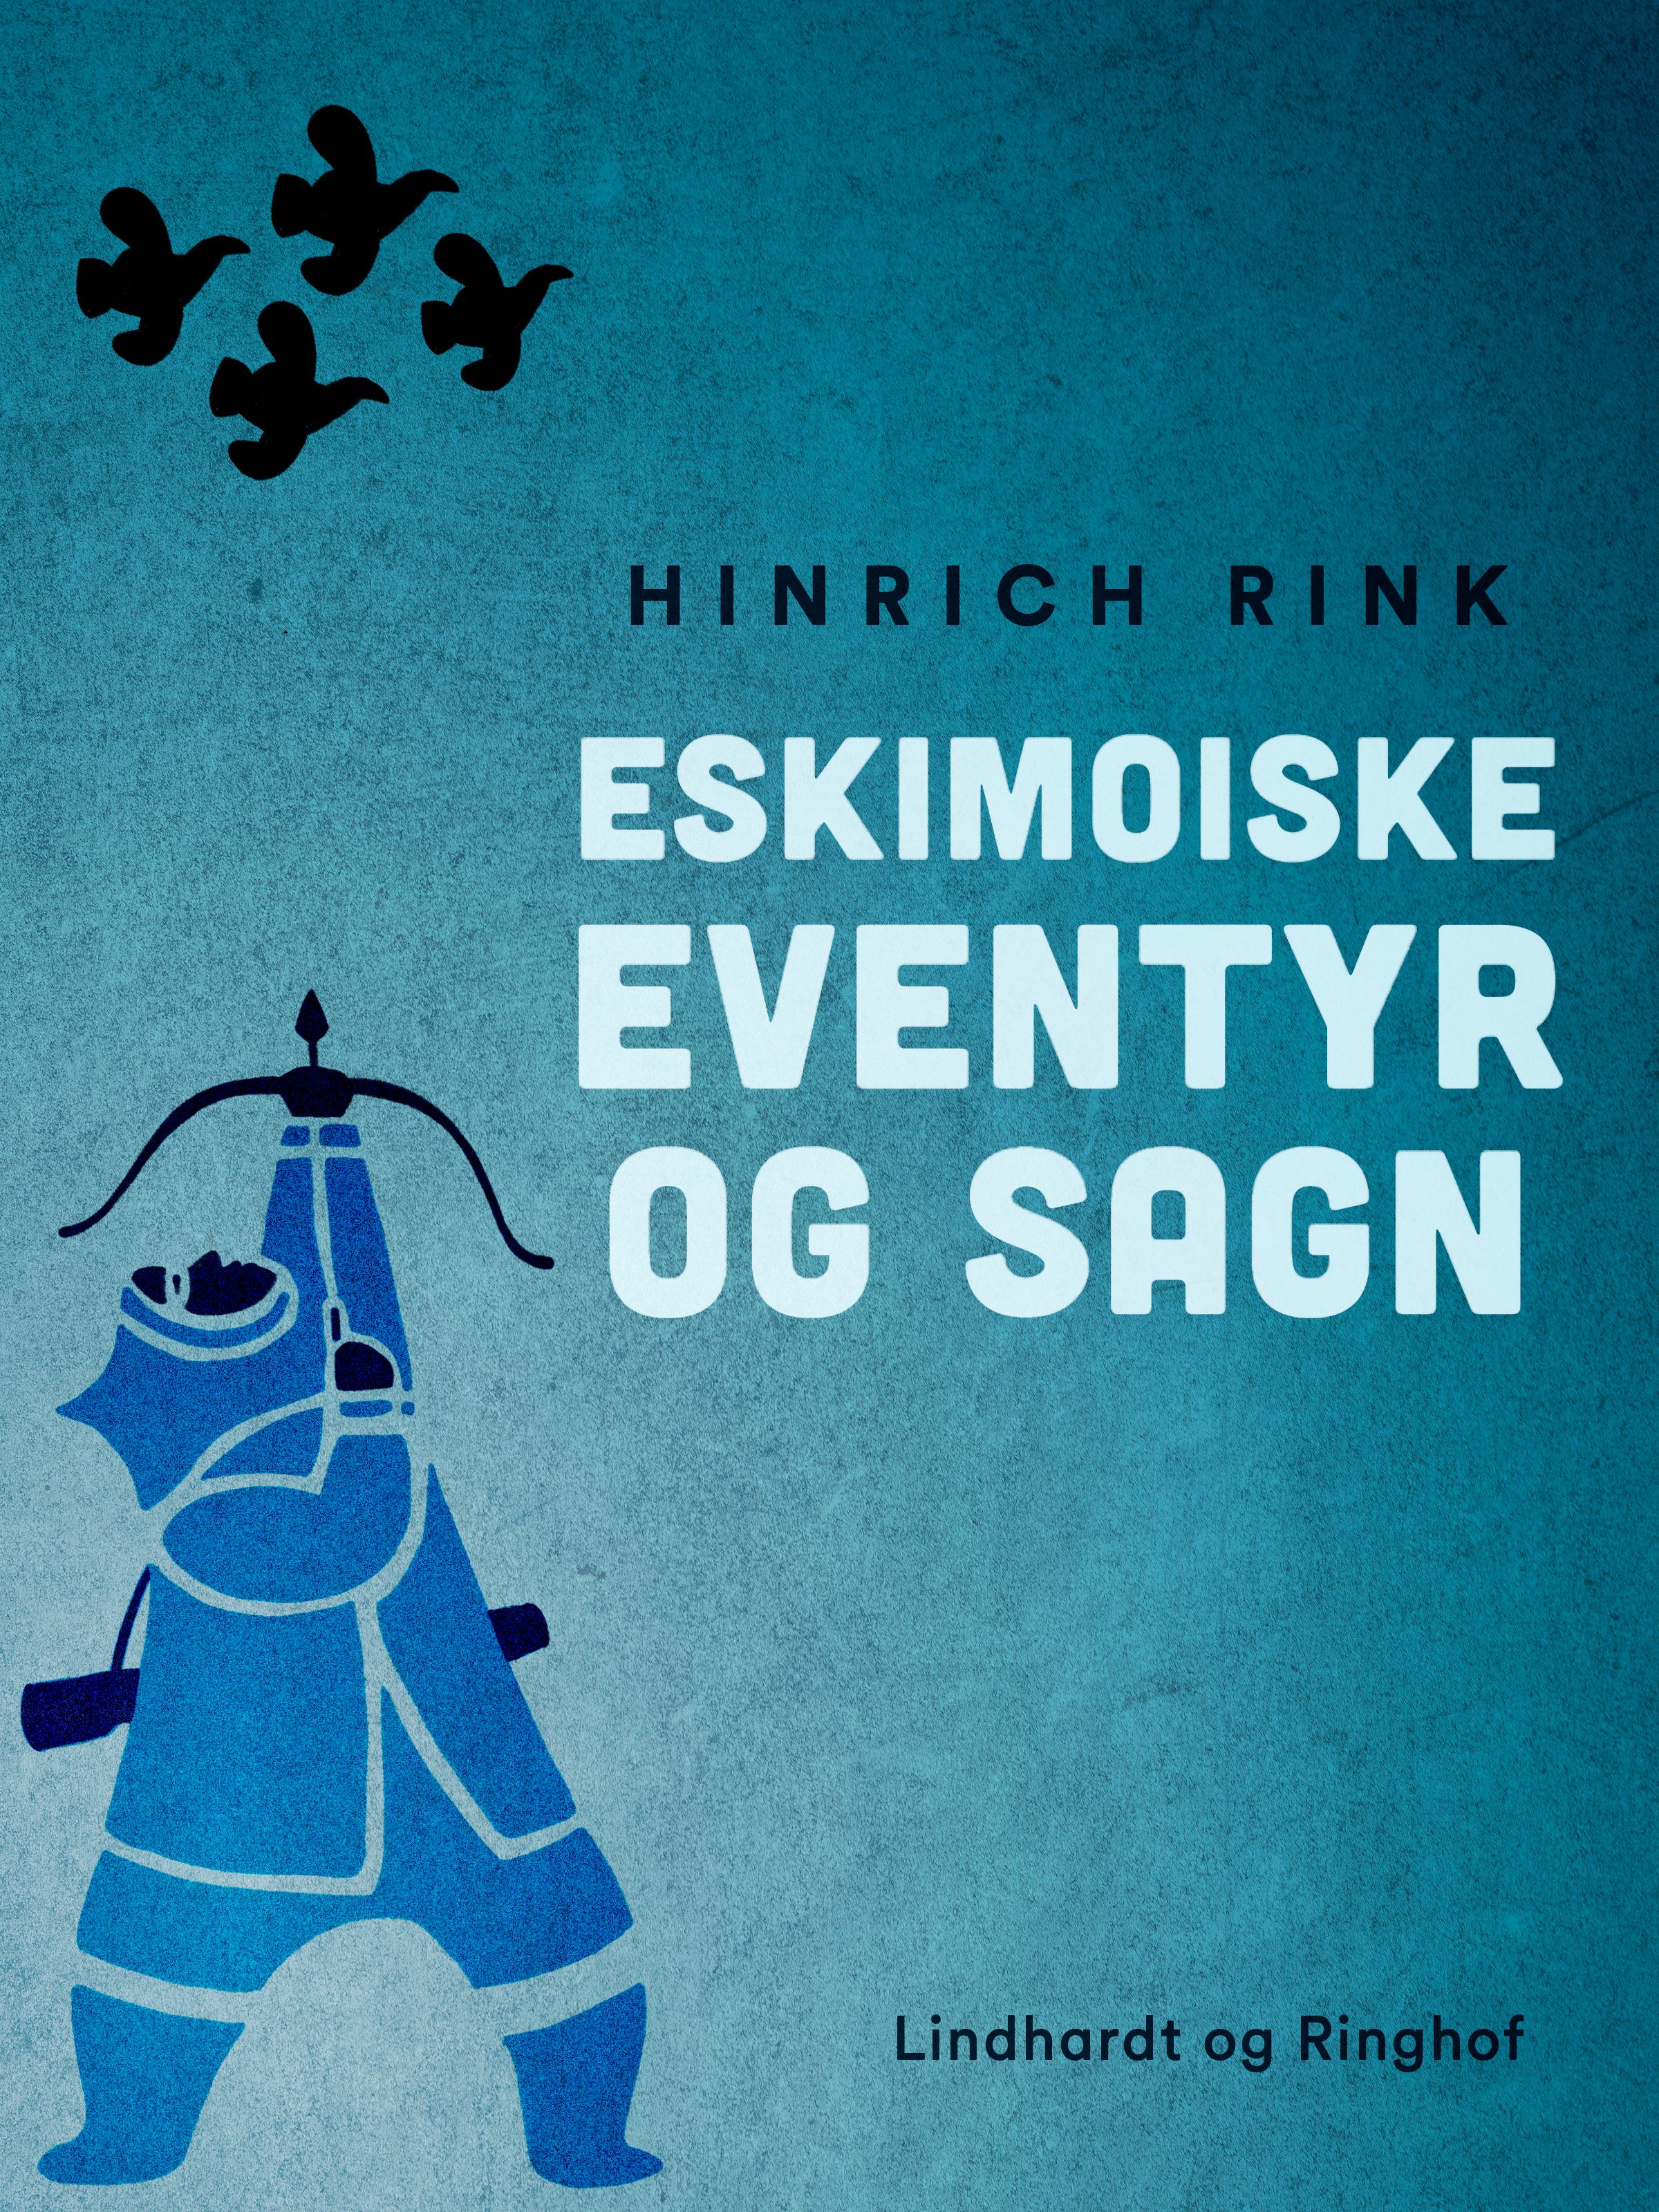 Eskimoiske eventyr og sagn, e-bok av Hinrich Rink